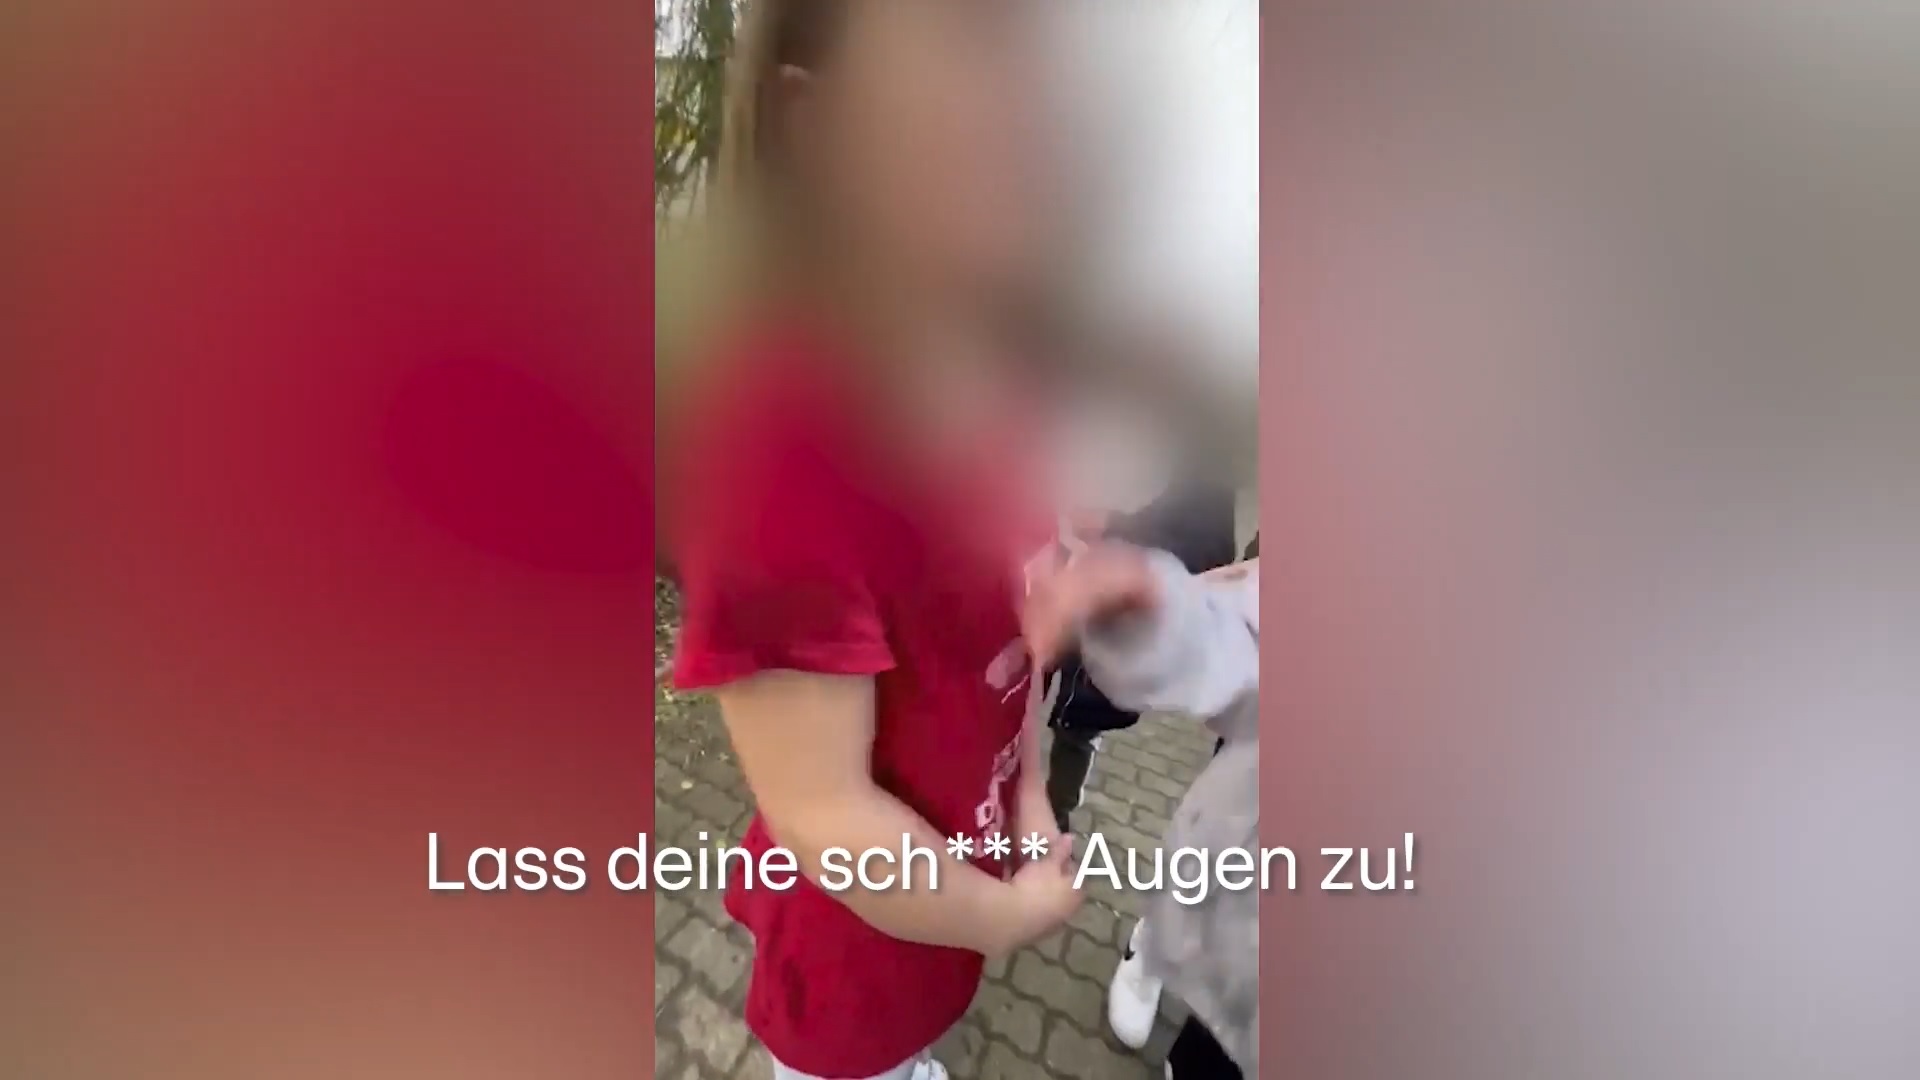 22일 독일 RTL방송이 공개한 13세 소녀 폭행 영상 중 한 장면. 10대 여학생들이 피해자를 에워싸고 비속어를 사용하며 위협하고 있다. 2023.3.22 독일 RTL 방송 캡처